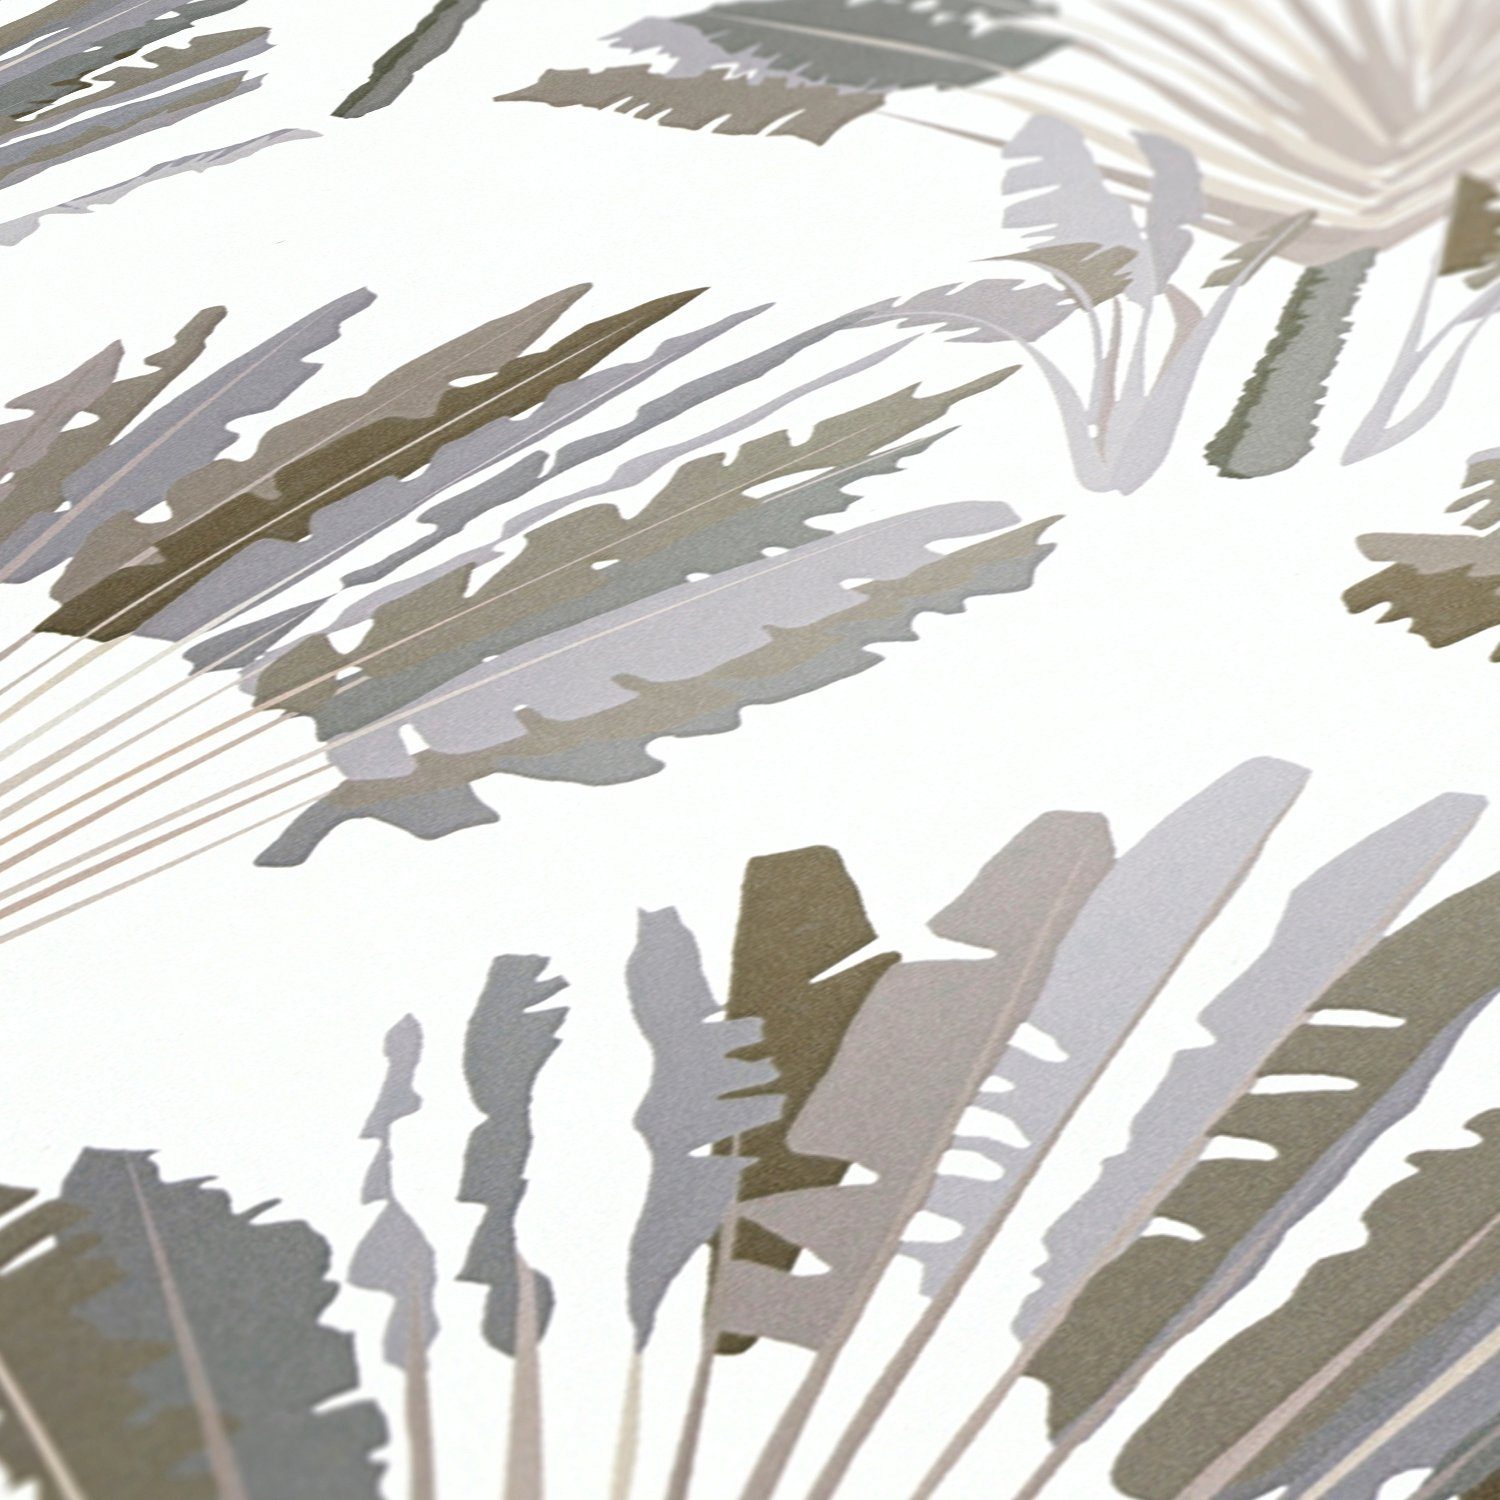 Palmentapete Tapete grau/weiß/braun Paper Vliestapete tropisch, Jungle Chic, Dschungel glatt, Federn floral, Architects botanisch,